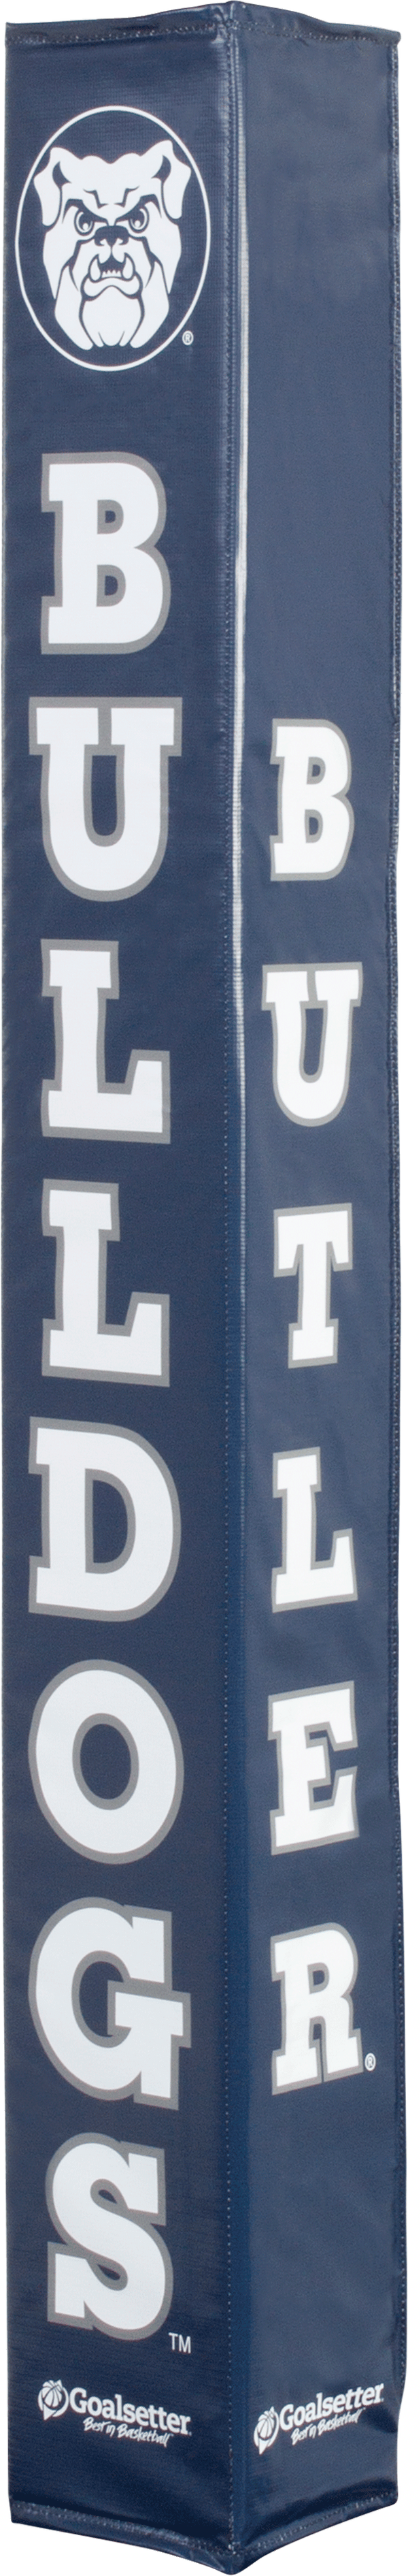 Goalsetter Collegiate Pole Pad - Butler Bulldogs Basketball (Blue)